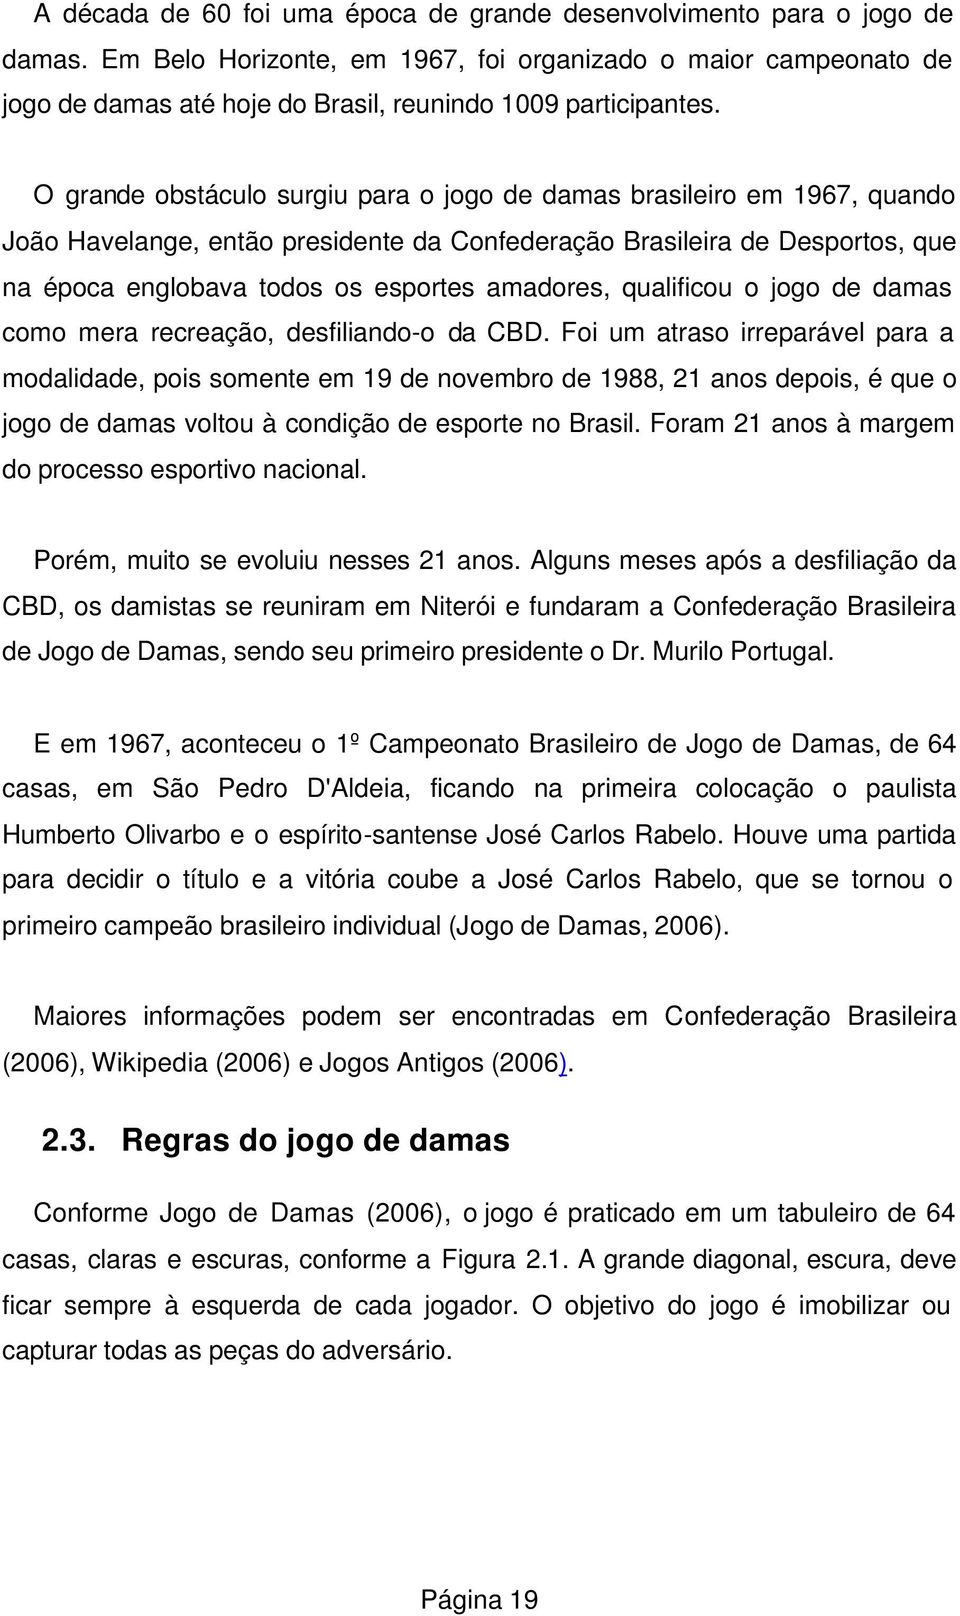 O grande obstáculo surgiu para o jogo de damas brasileiro em 1967, quando João Havelange, então presidente da Confederação Brasileira de Desportos, que na época englobava todos os esportes amadores,